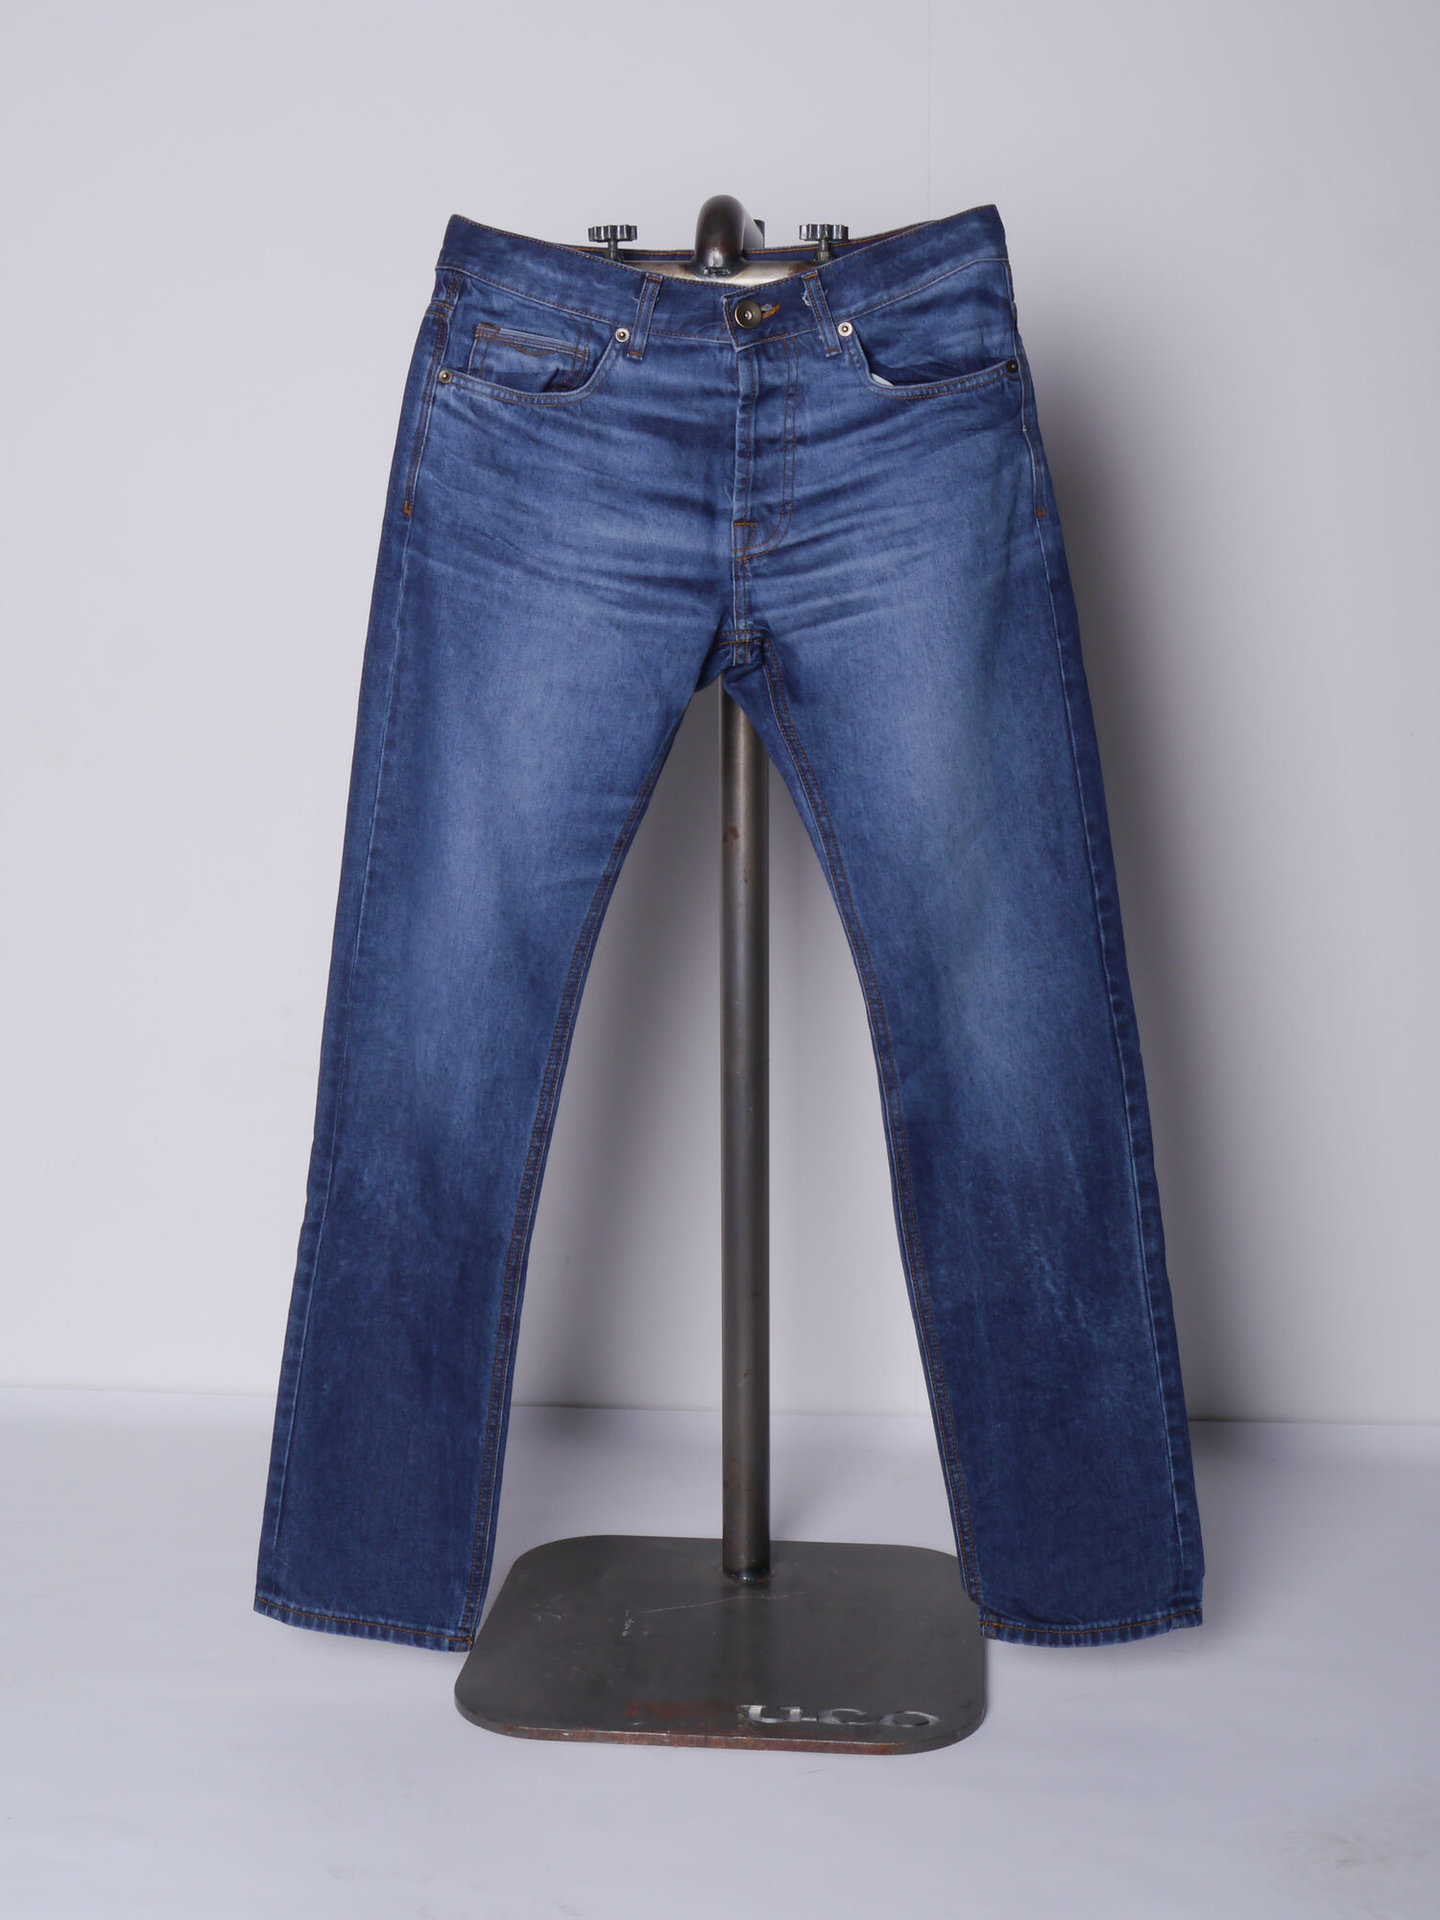 Jeansbroek op statief van het merk UCO